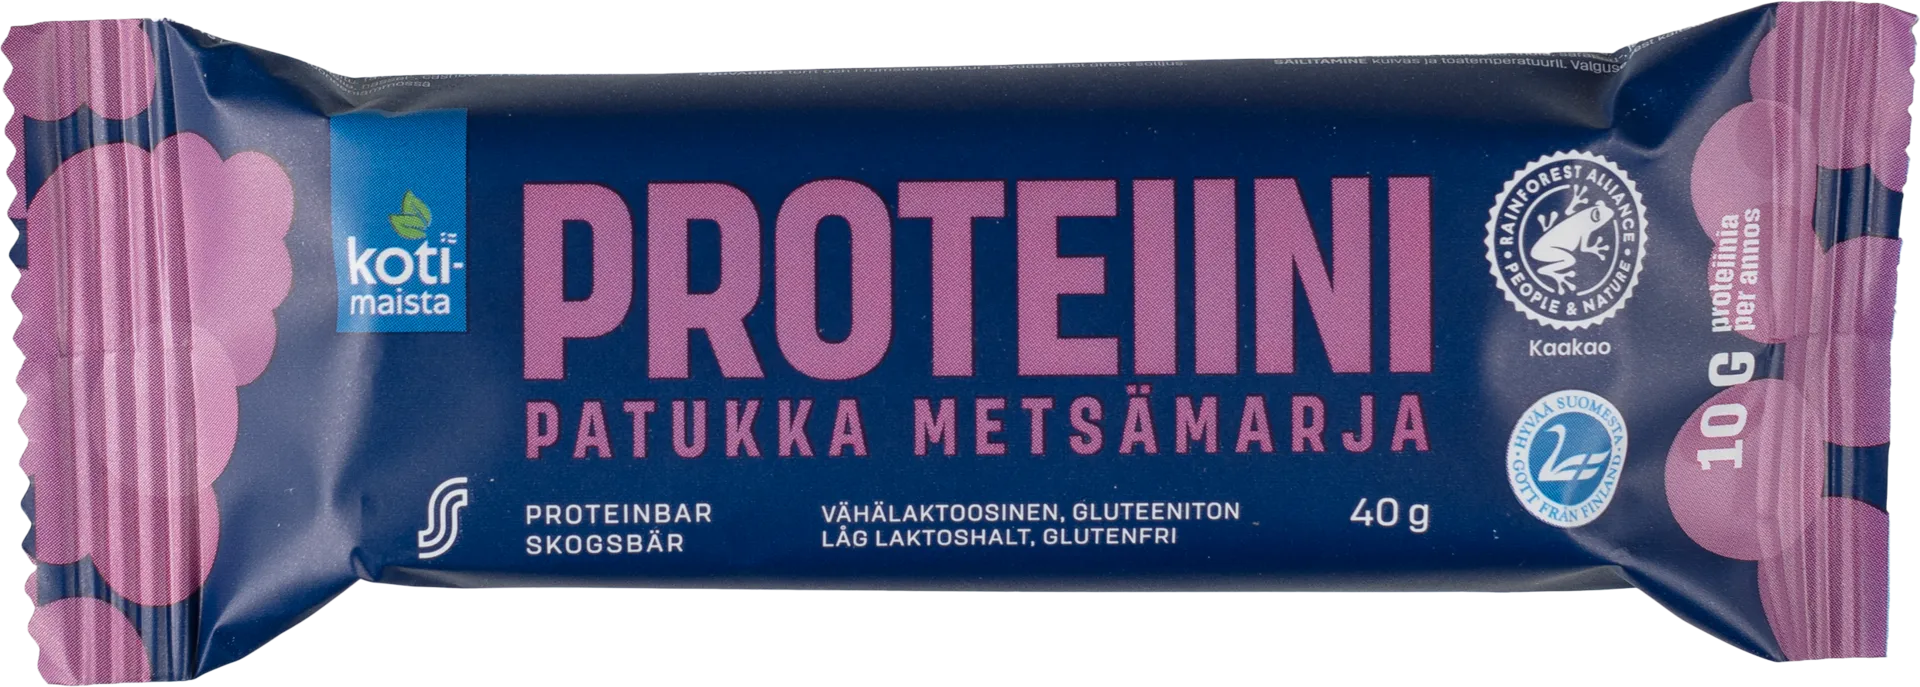 Kotimaista proteiinipatukka metsämarja 40 g